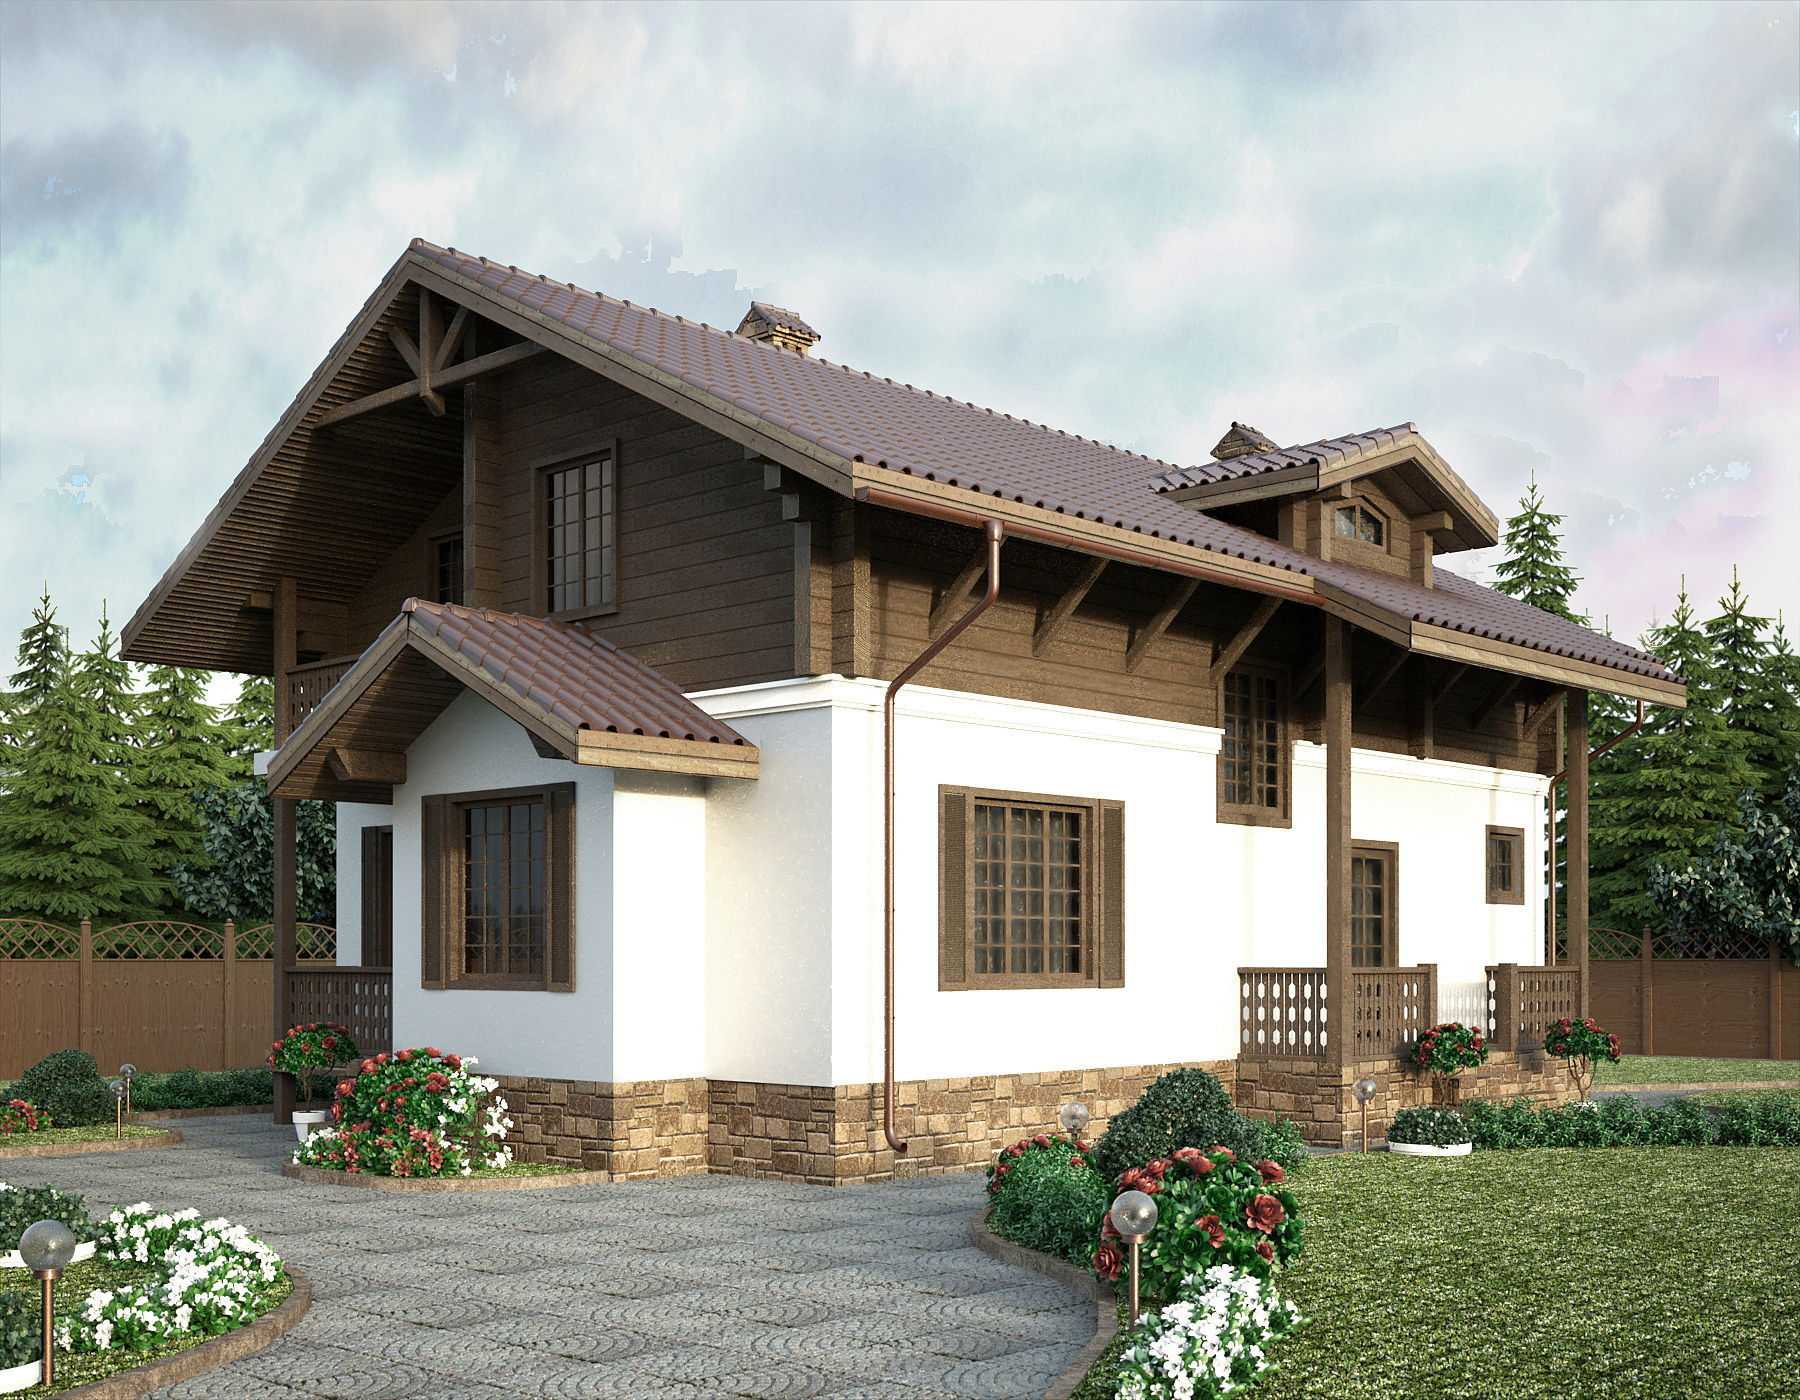 Дом в стиле шале одноэтажный из бруса, проекты загородного коттеджа с деревянным и комбинированным фасадом, дизайн интерьера частного особняка